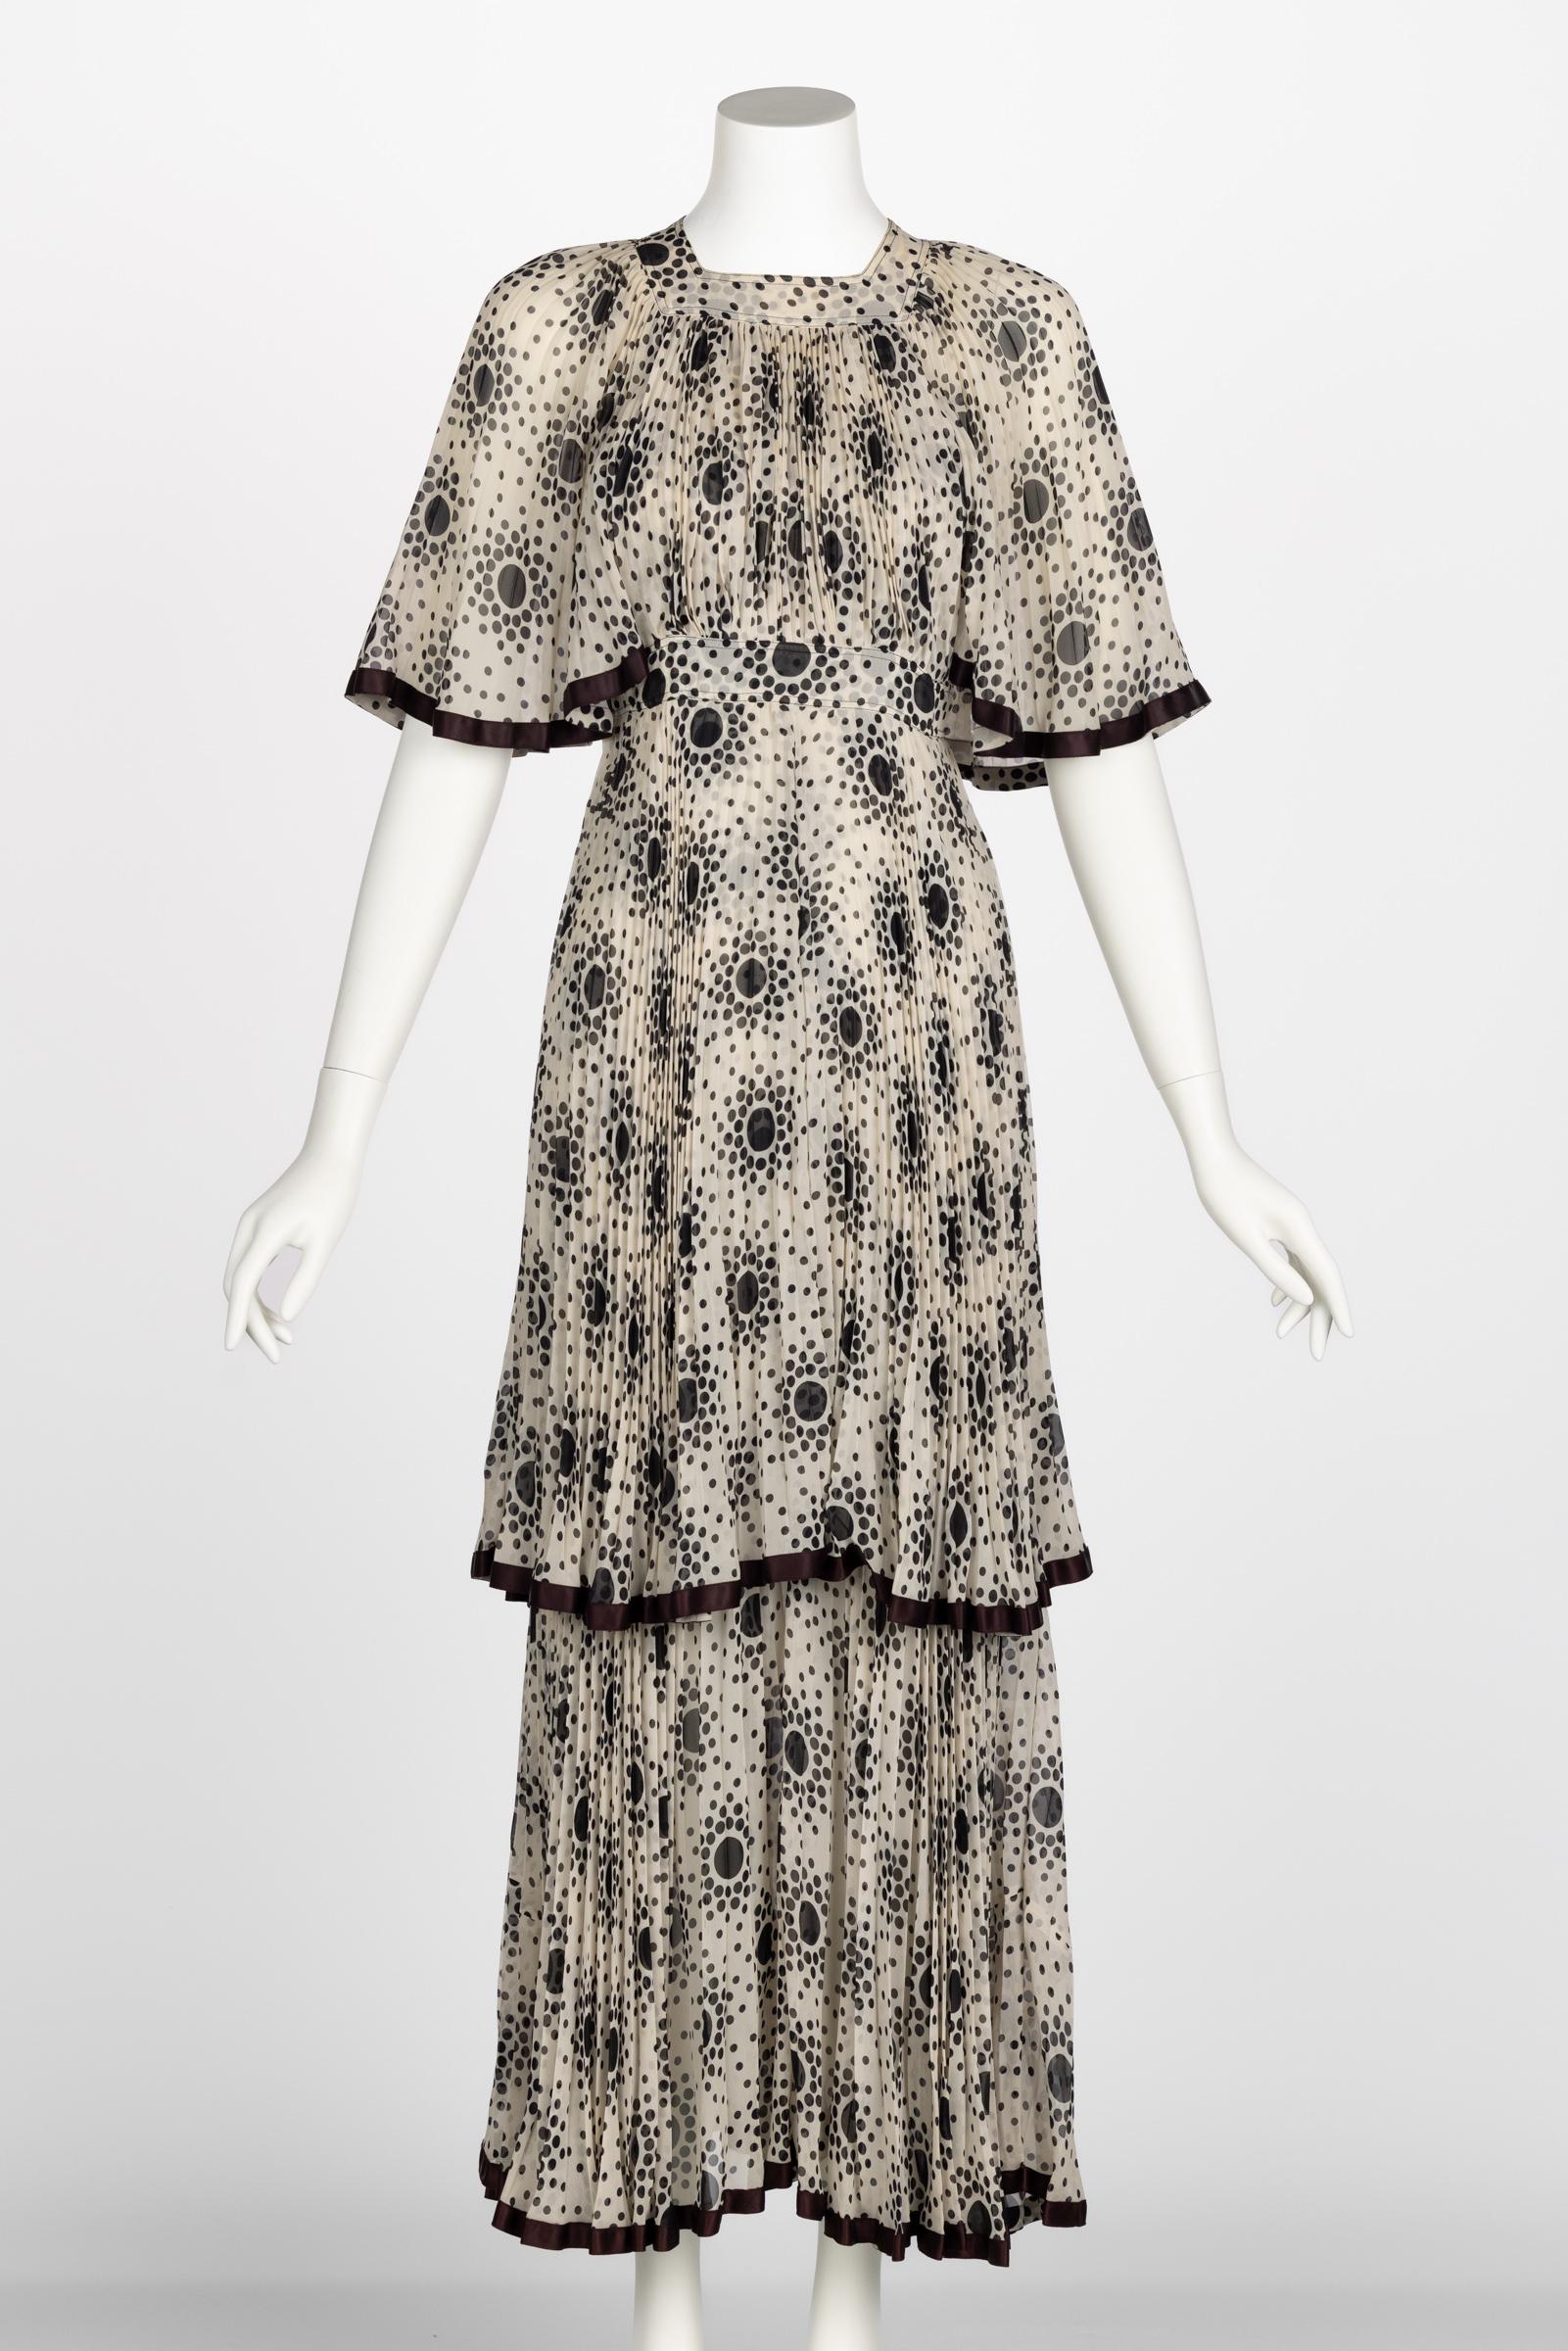 Noir Divine robe Jean Muir des années 1970 en mousseline de soie plissée ivoire à pois noirs superposés en vente